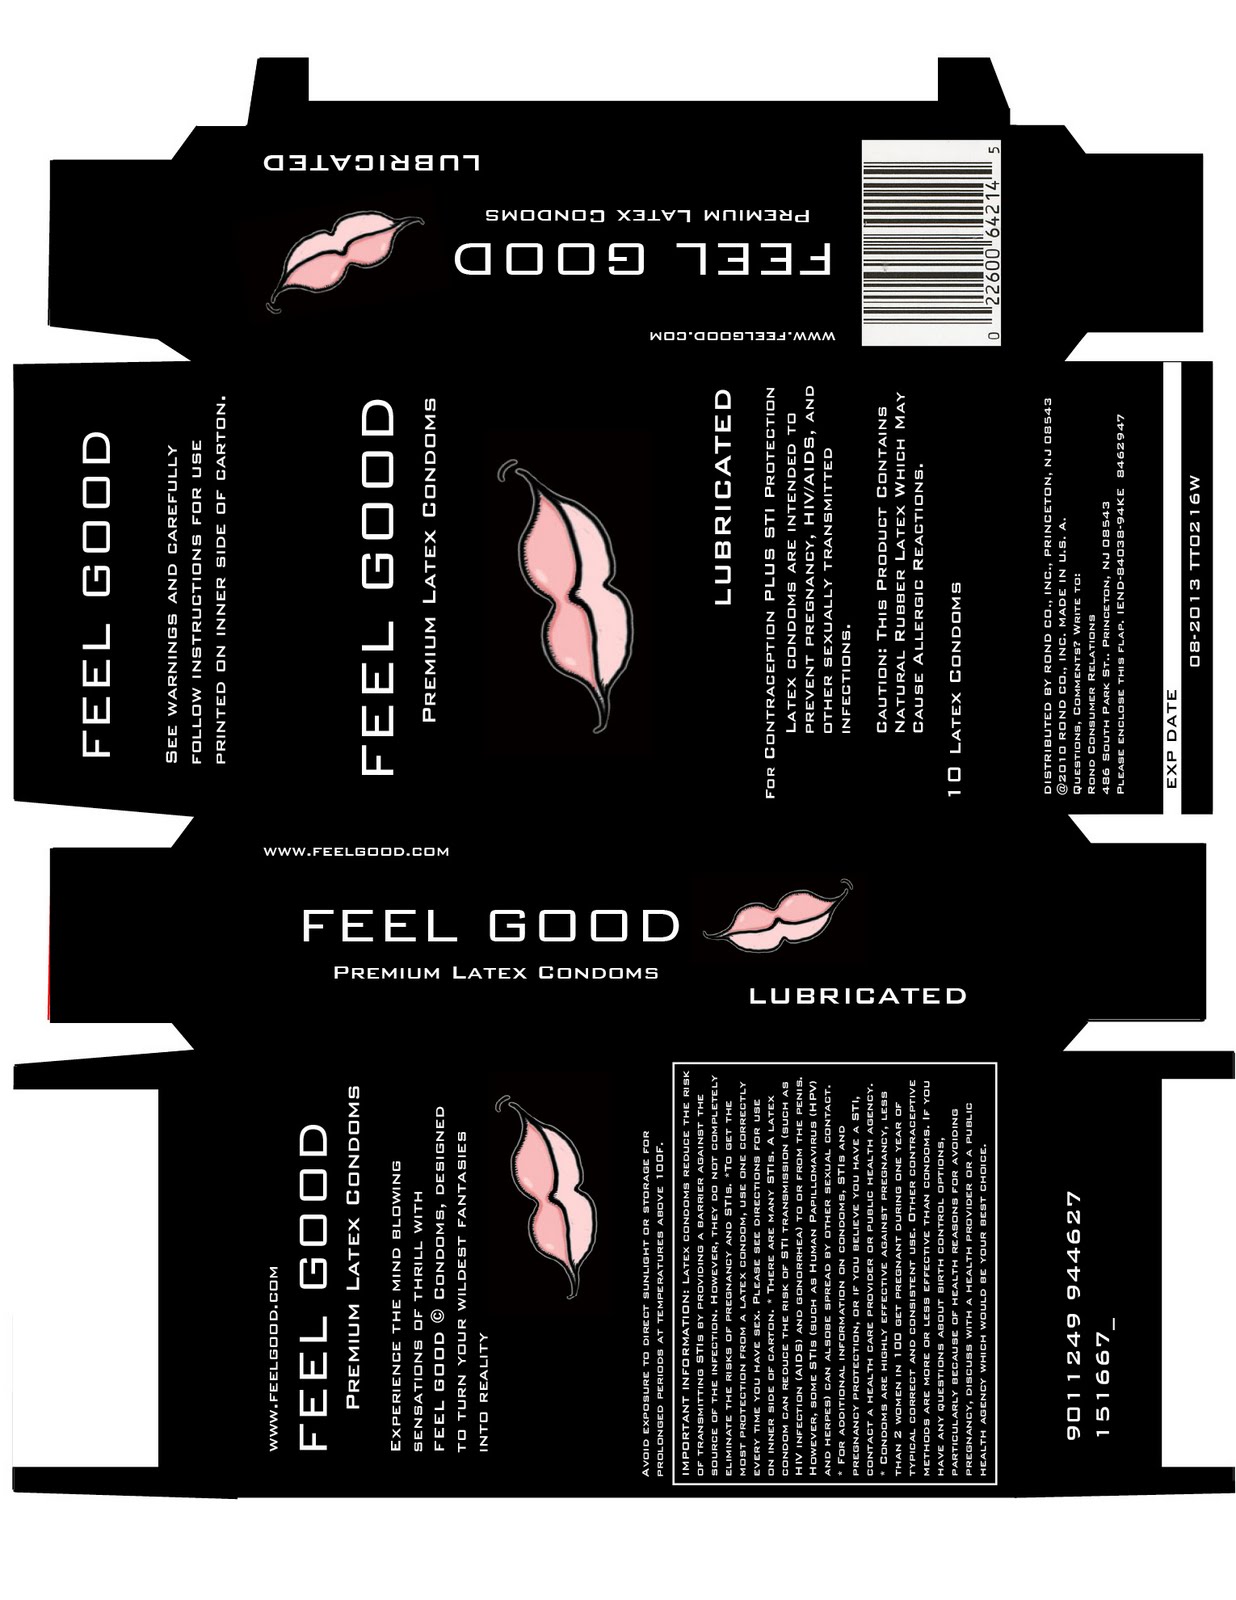 Advanced Graphic Publication Project condom box design copy